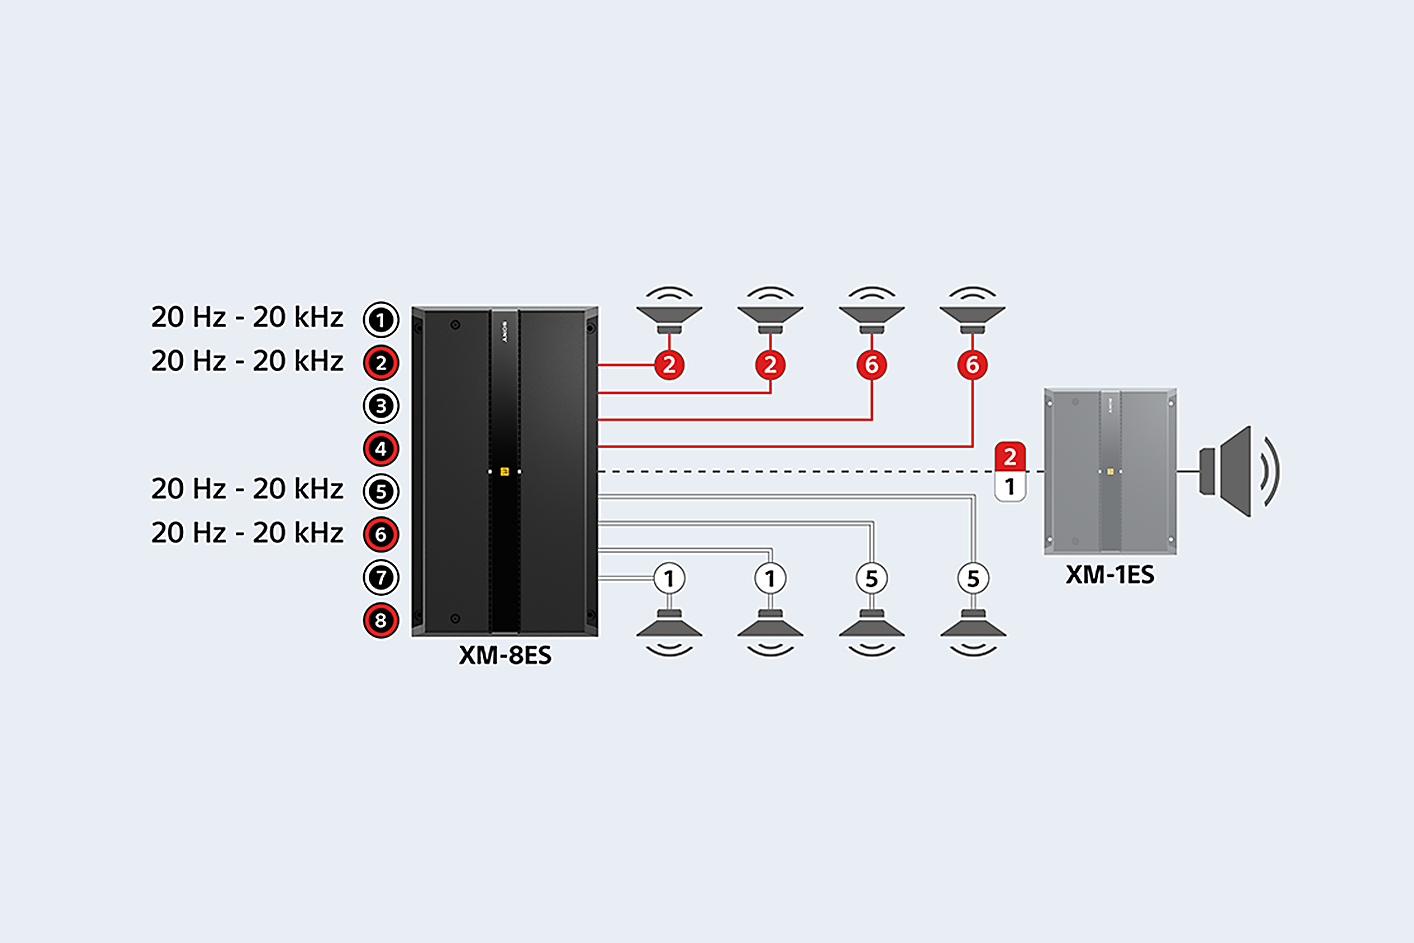 Diagram XM-8ES terhubung ke delapan speaker dan XM-1ES, setelan suara ditampilkan di sebelah port 1, 2, 5, & 6